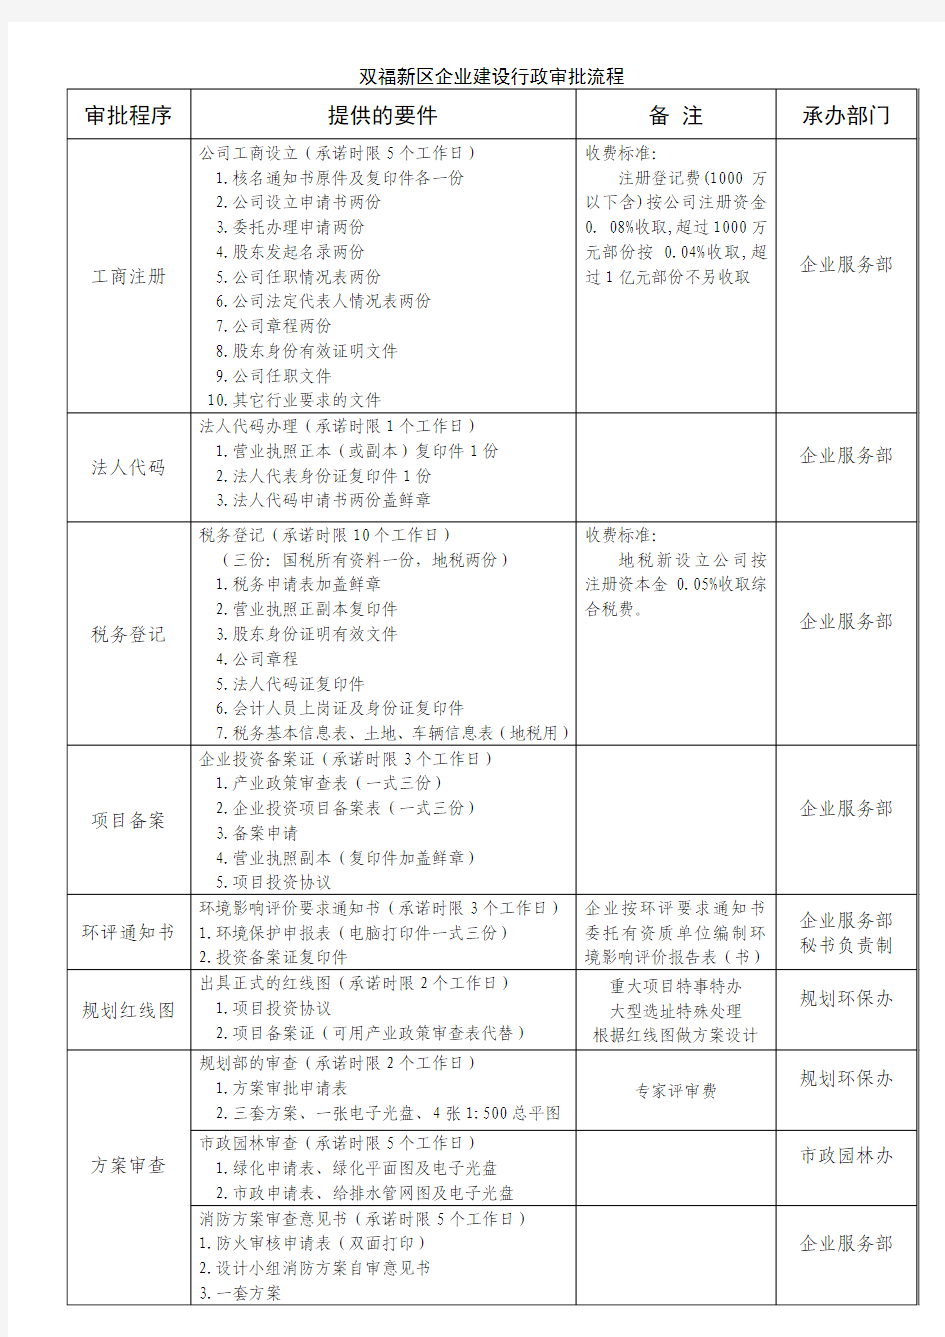 重庆江津双福新区项目开发流程表(全详)